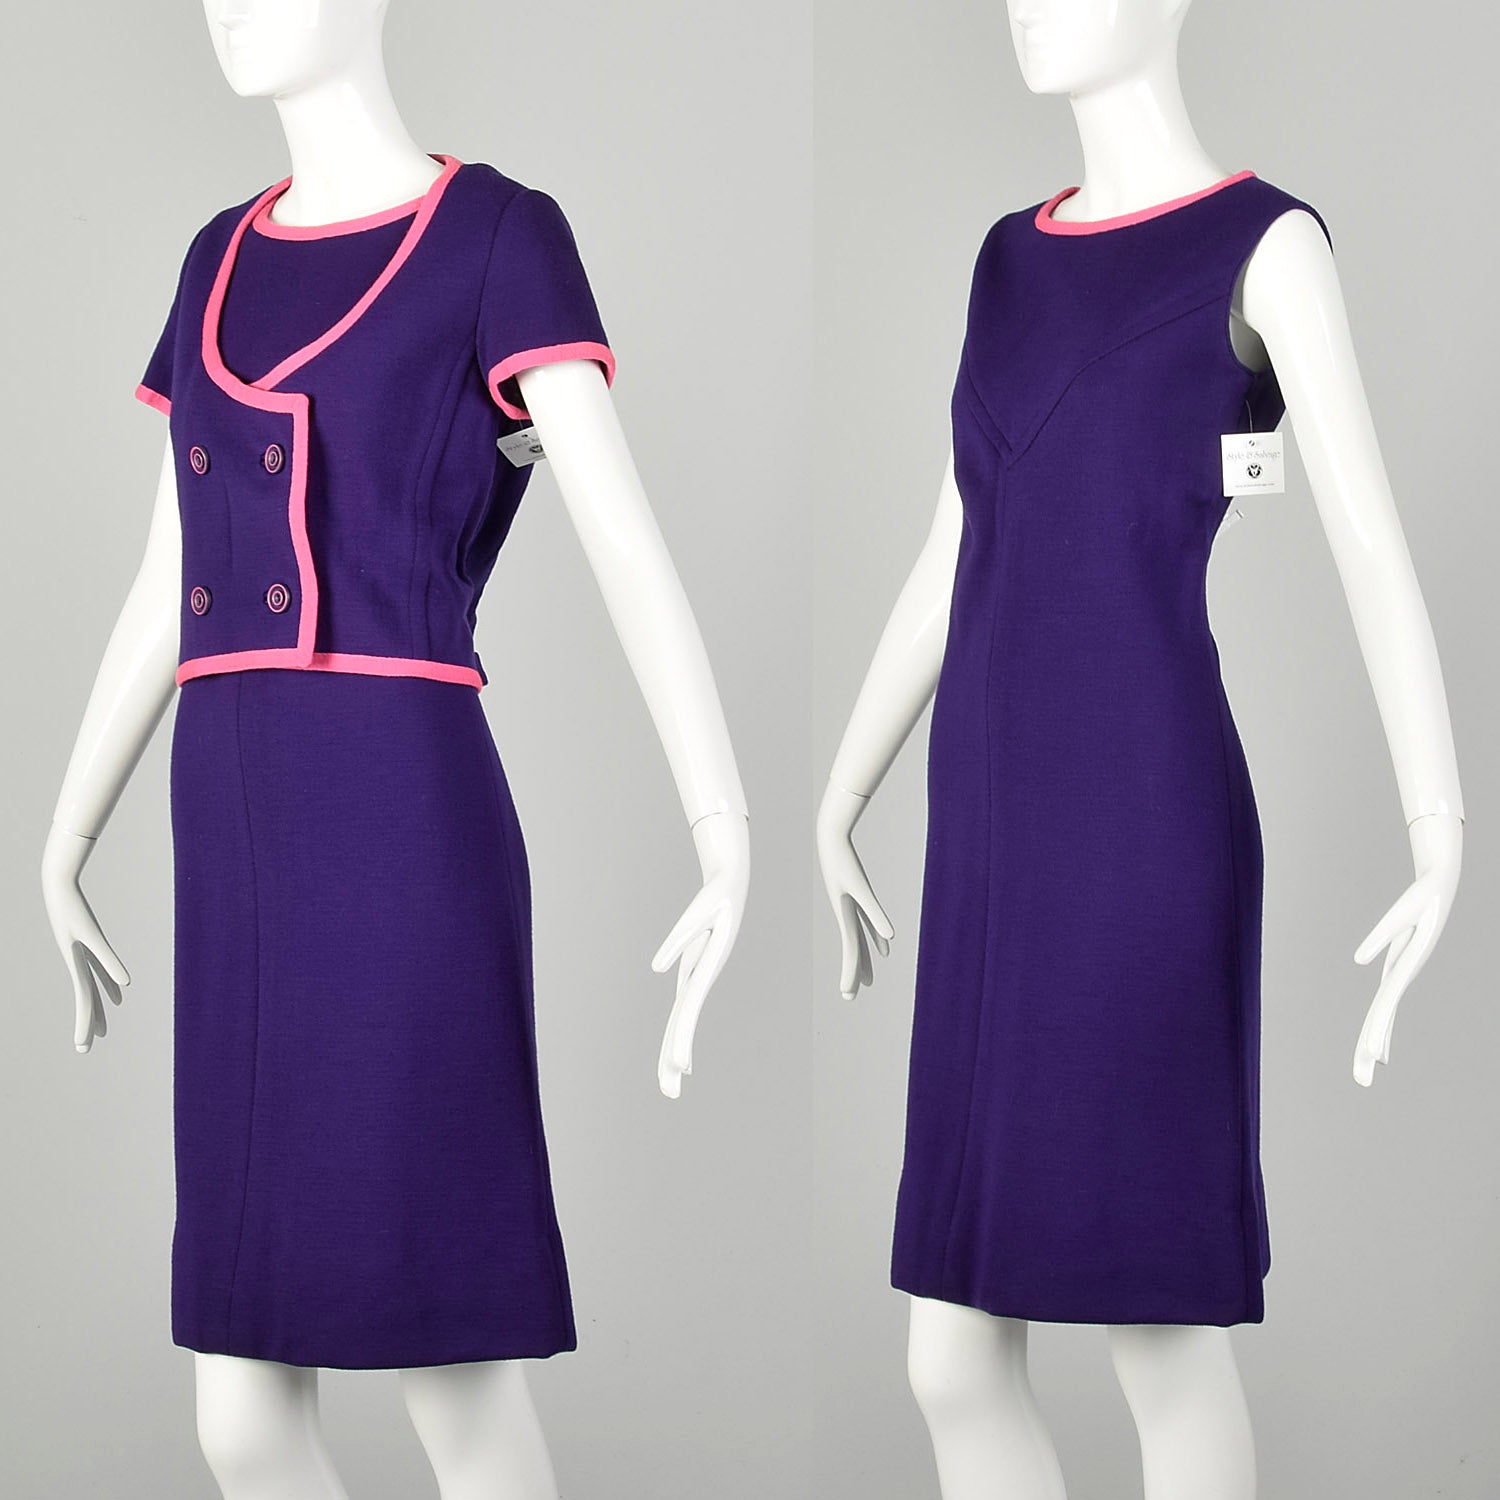 Small 1960s Shift Dress Purple Knit Set Jacket Outfit